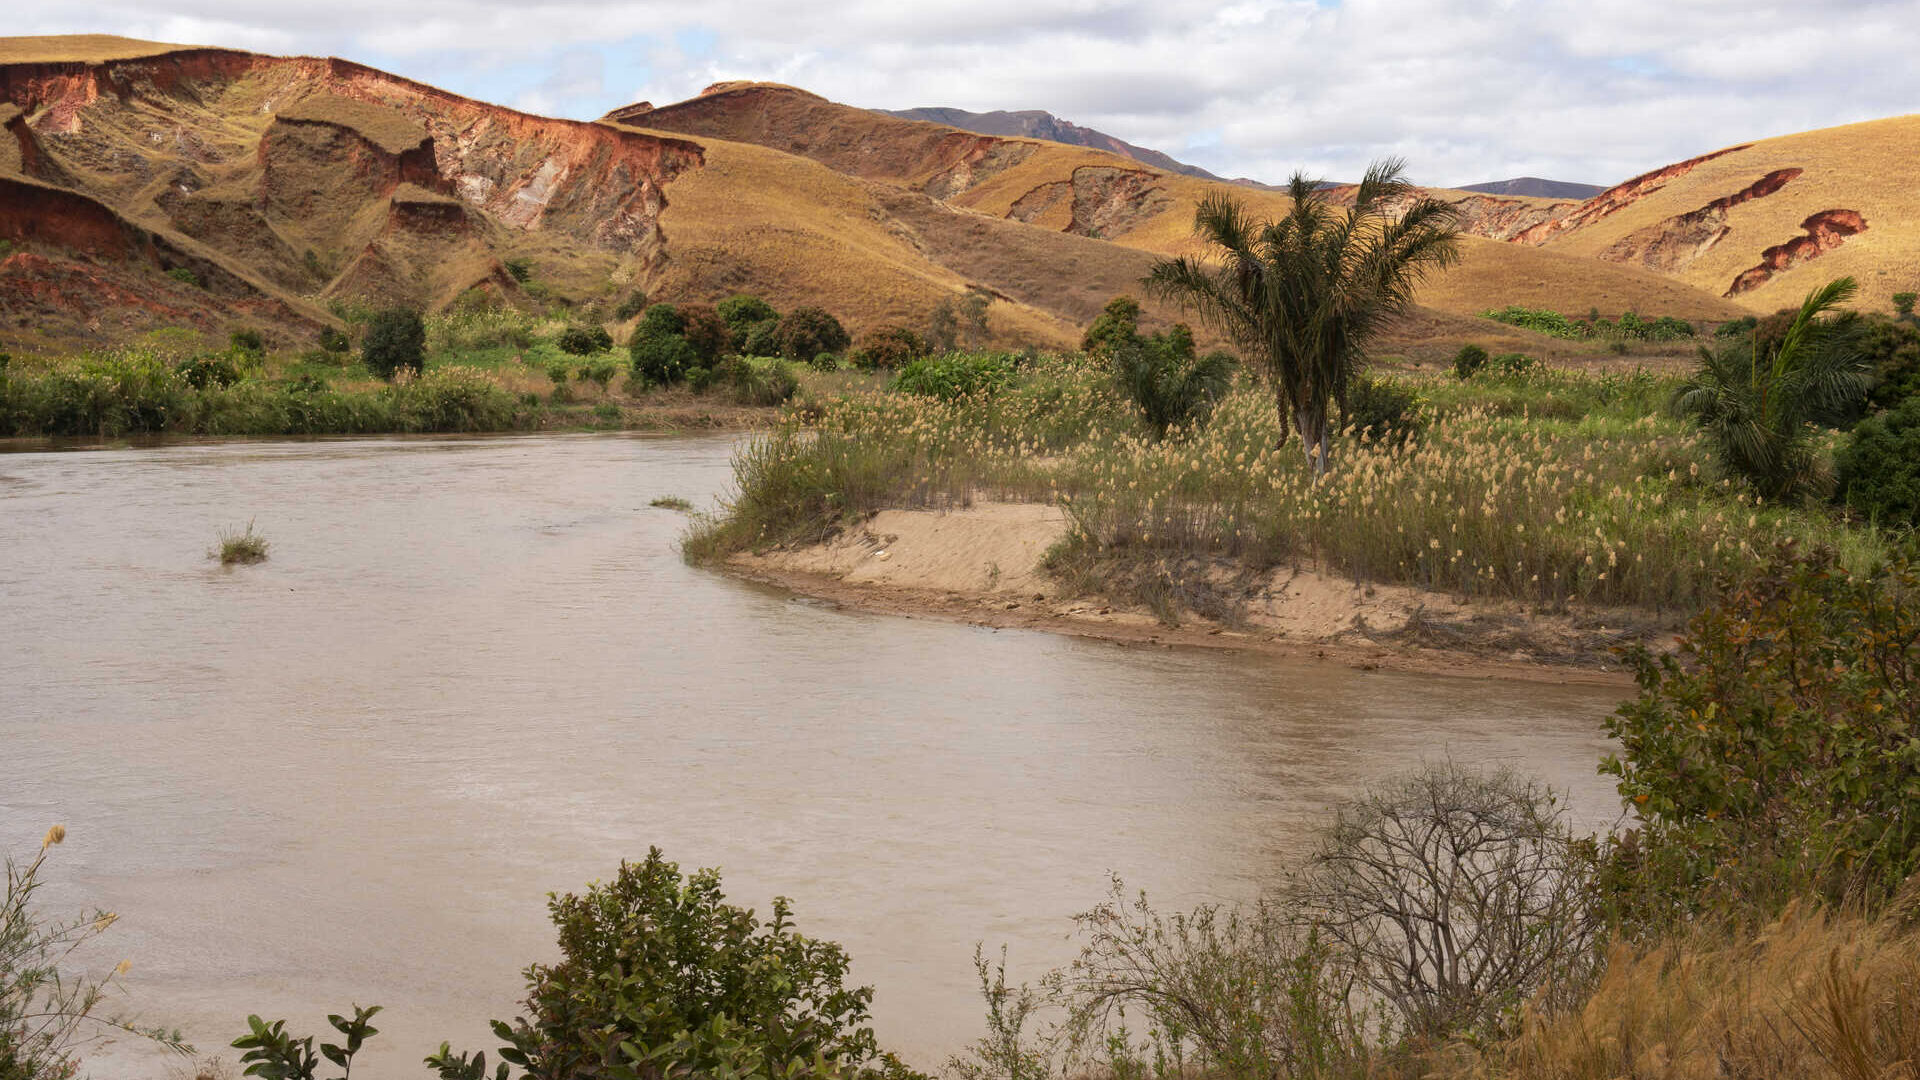 Madagaskar: epäsäännöllisillä sateilla ja kallioeroosiolla on ratkaiseva rooli uusien lajien ilmestymisessä ja kehittymisessä